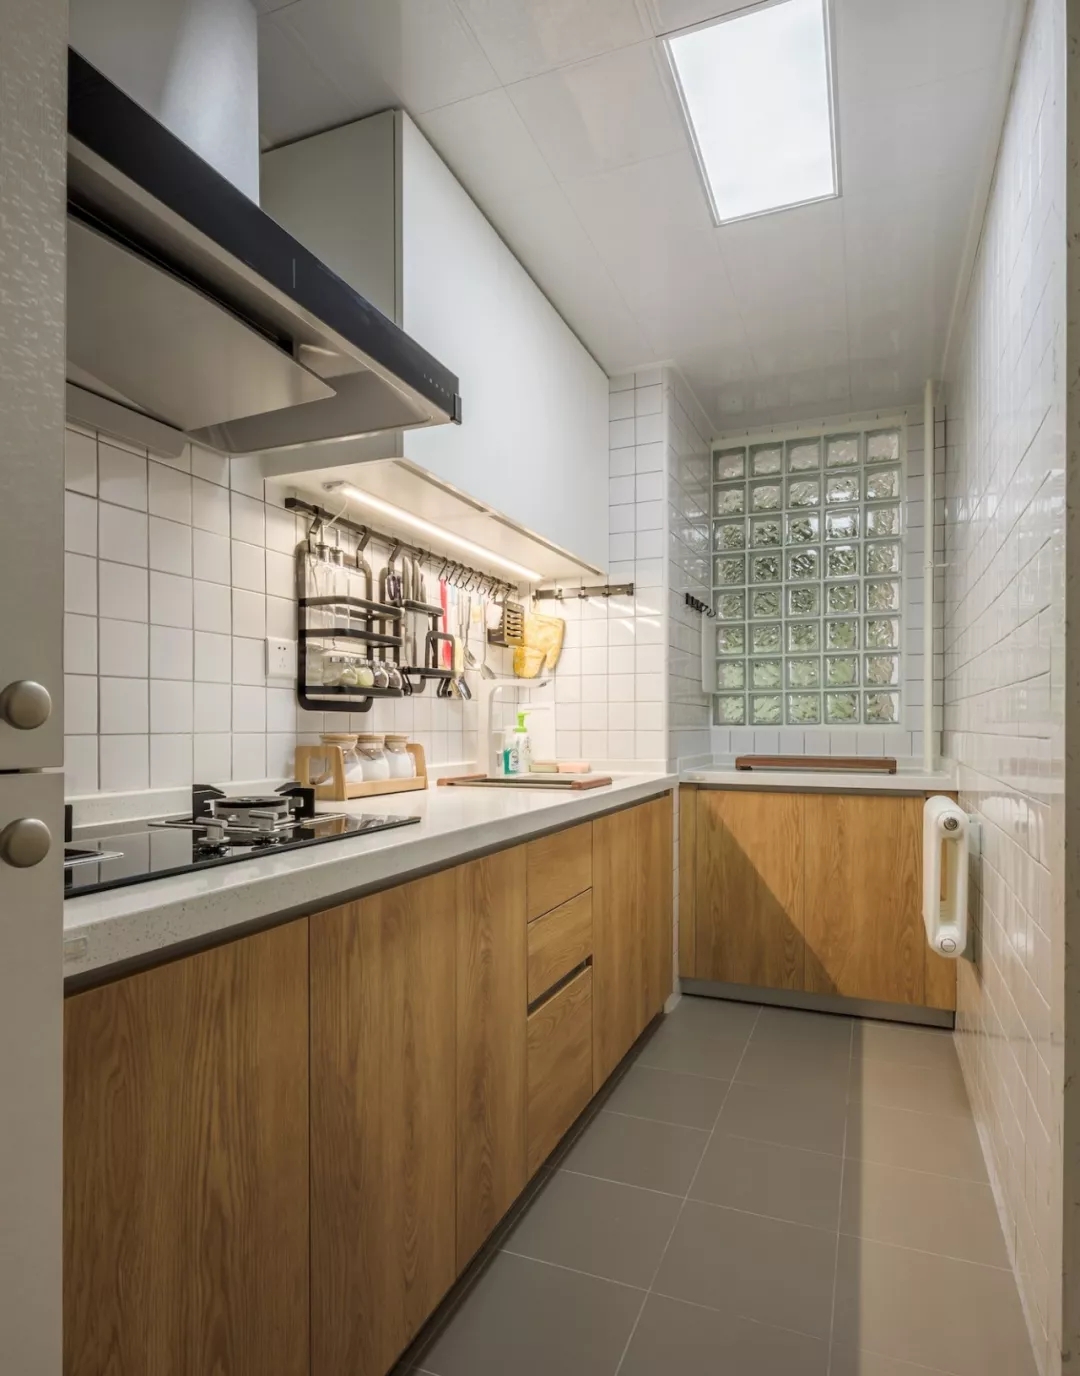 木质的橱柜构成一个U型的厨房格局，临窗的明亮采光，让烹饪更加宽松舒适。-家居美图_装一网装修效果图